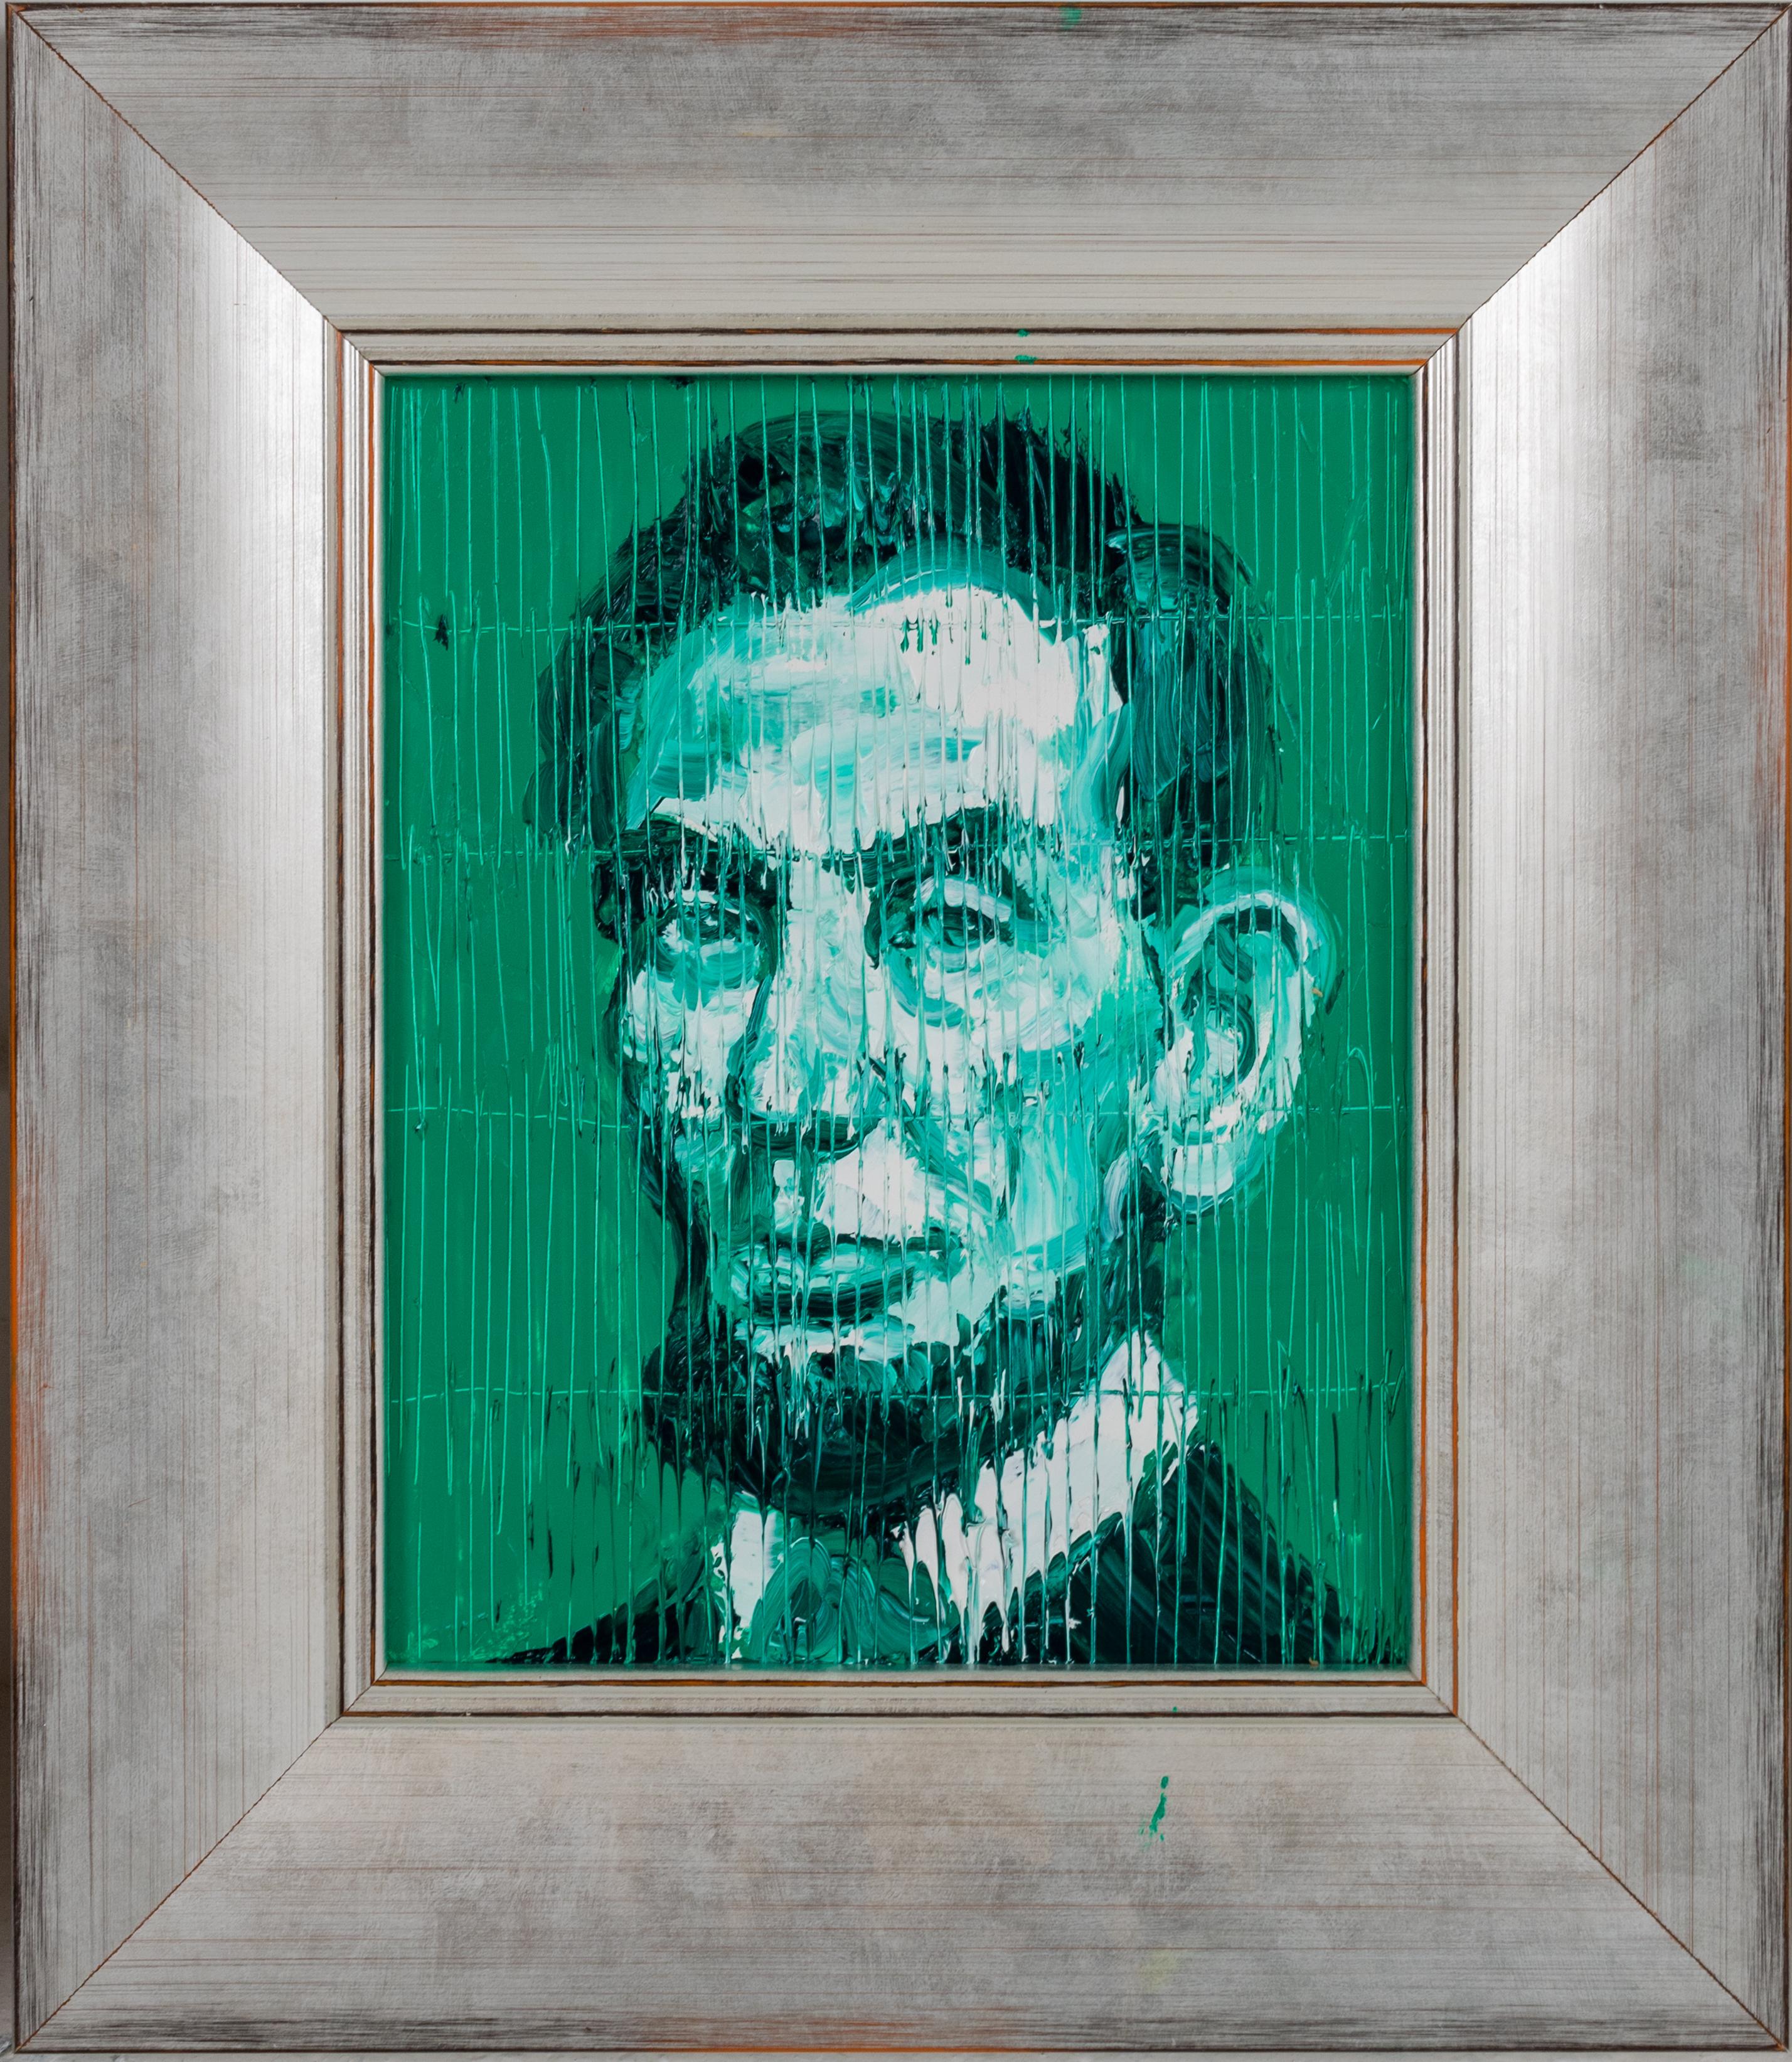 Hunt Slonem Portrait Painting - Abe Lincoln